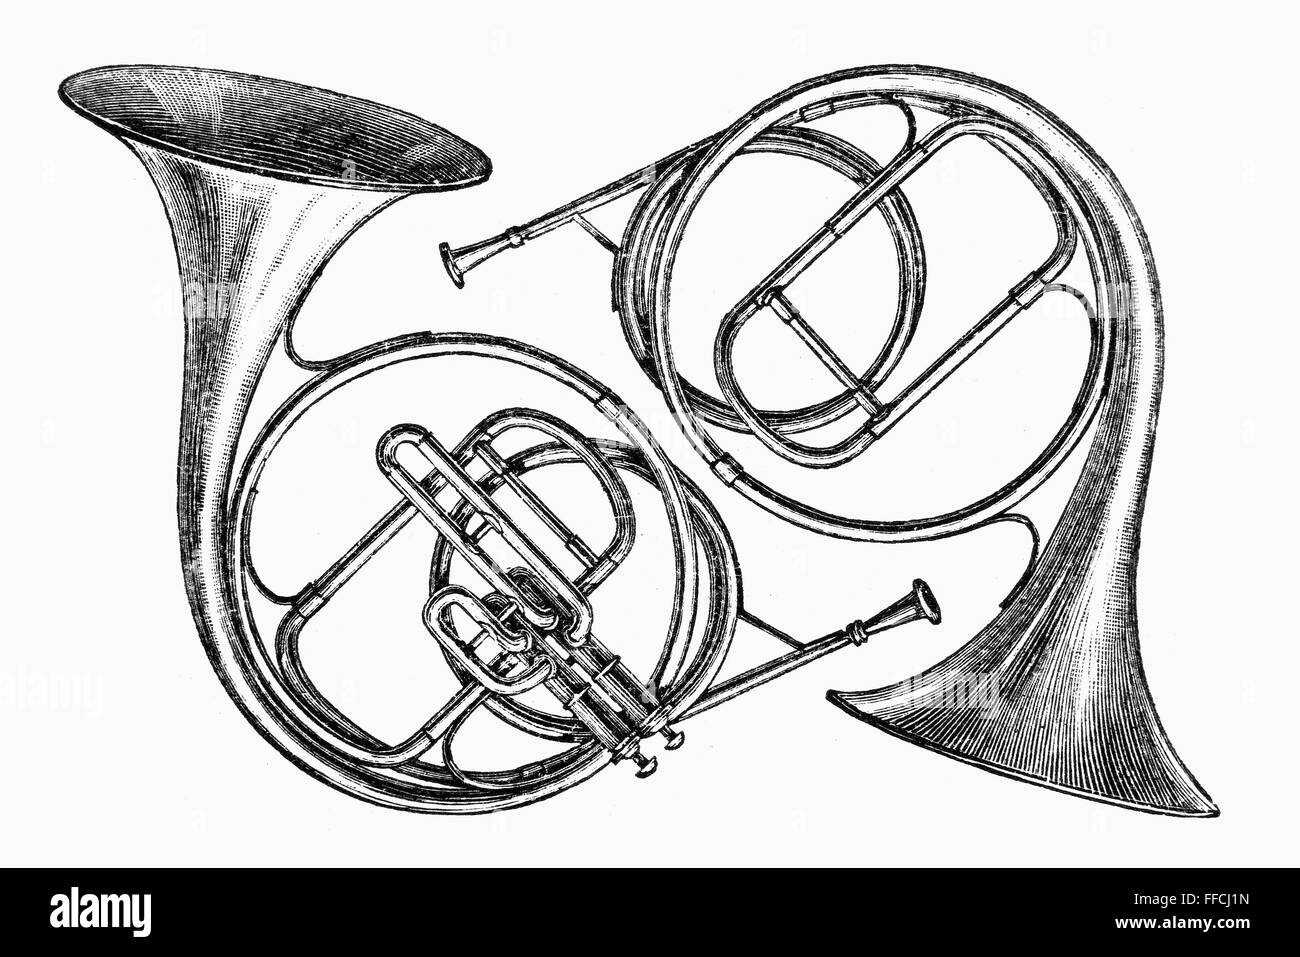 MUSIKINSTRUMENT: HÖRNER. NUM paar Hörner: Waldhorn mit Ventilen (links) und früh ventillose Trompete. Linie, Gravur, Deutsch, Ende des 19. Jahrhunderts. Stockfoto